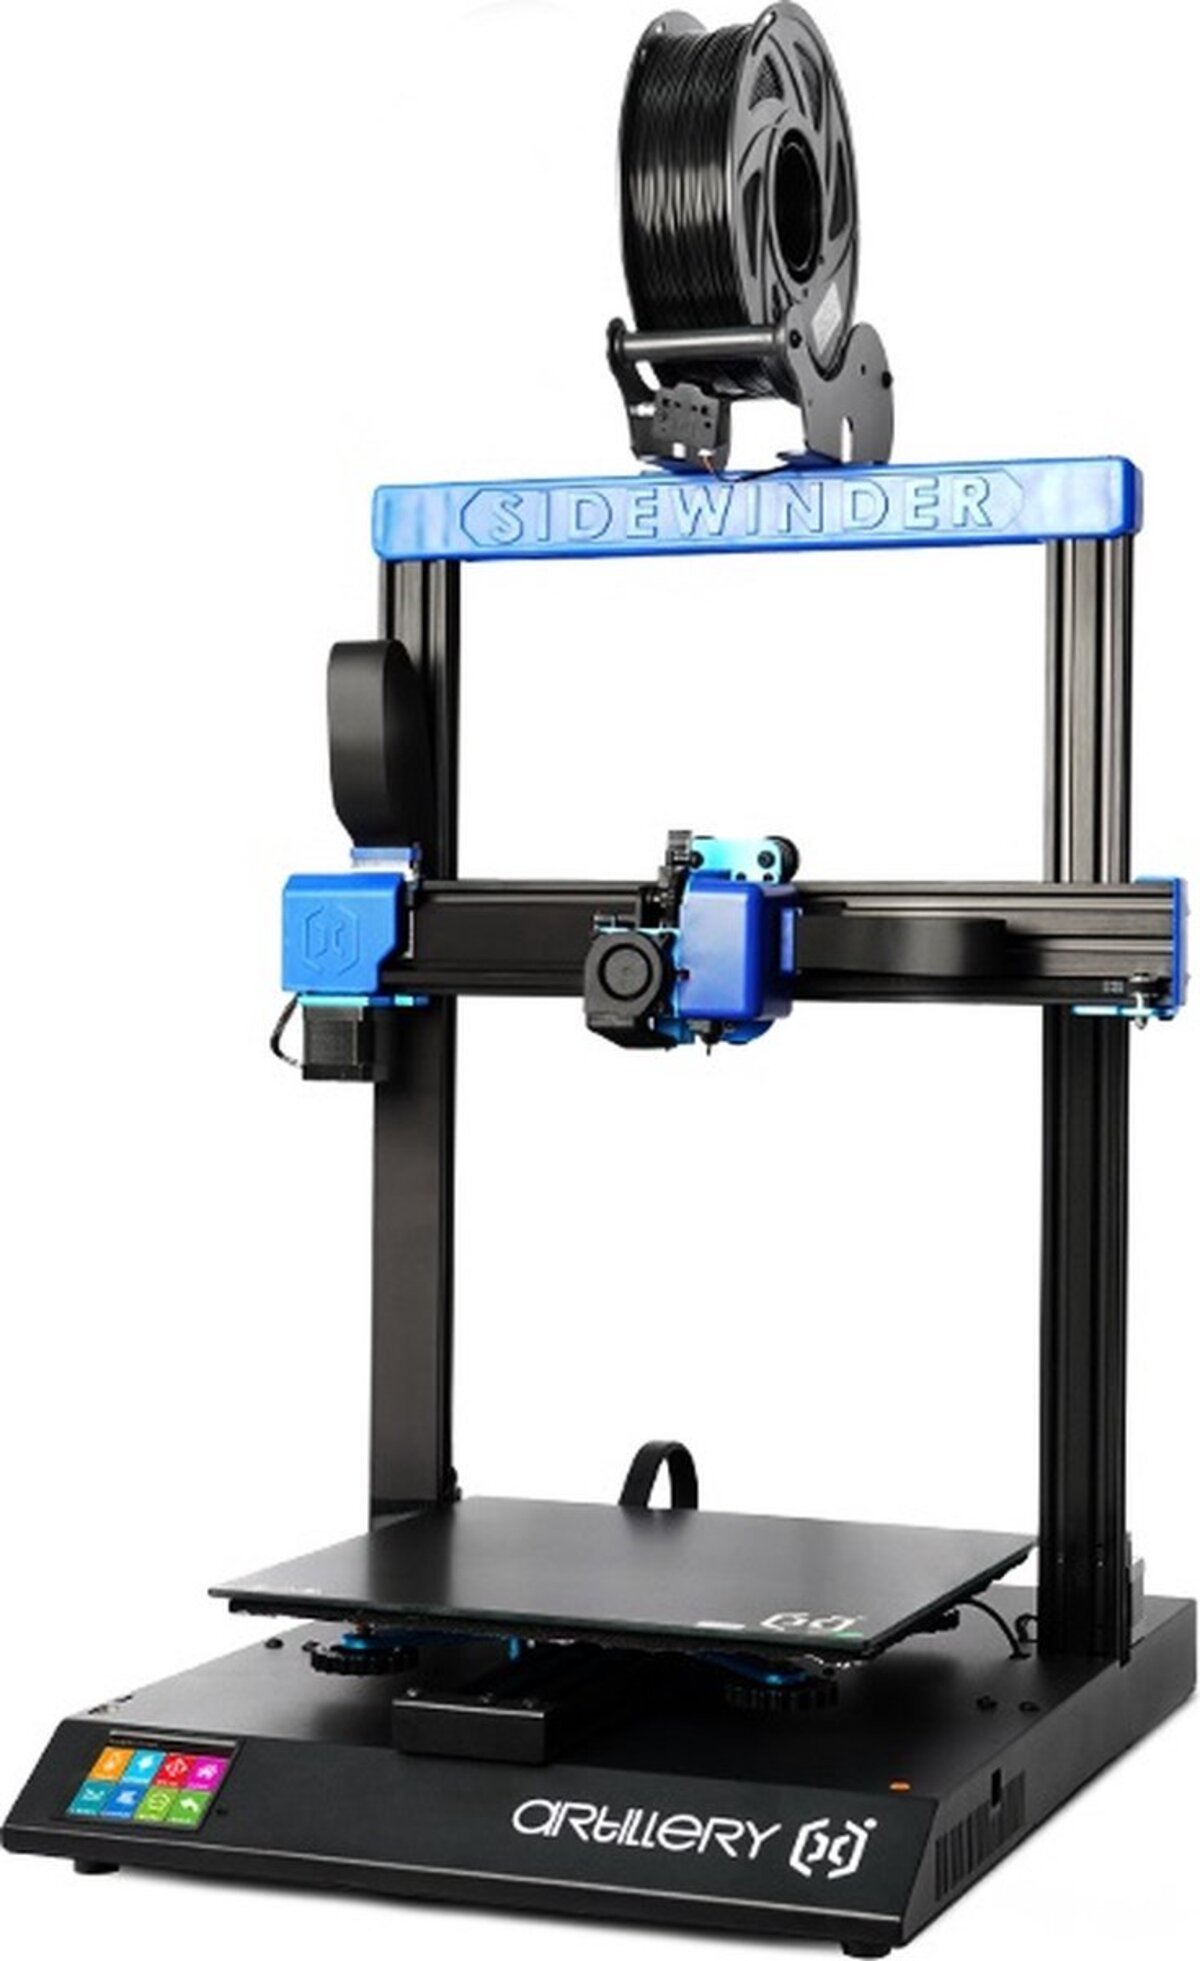 3D Auto-Level Drucker 300x300x400mm ARTILLERY FDM Sidewinder Drive Direct 3D Printer X2 Extruder